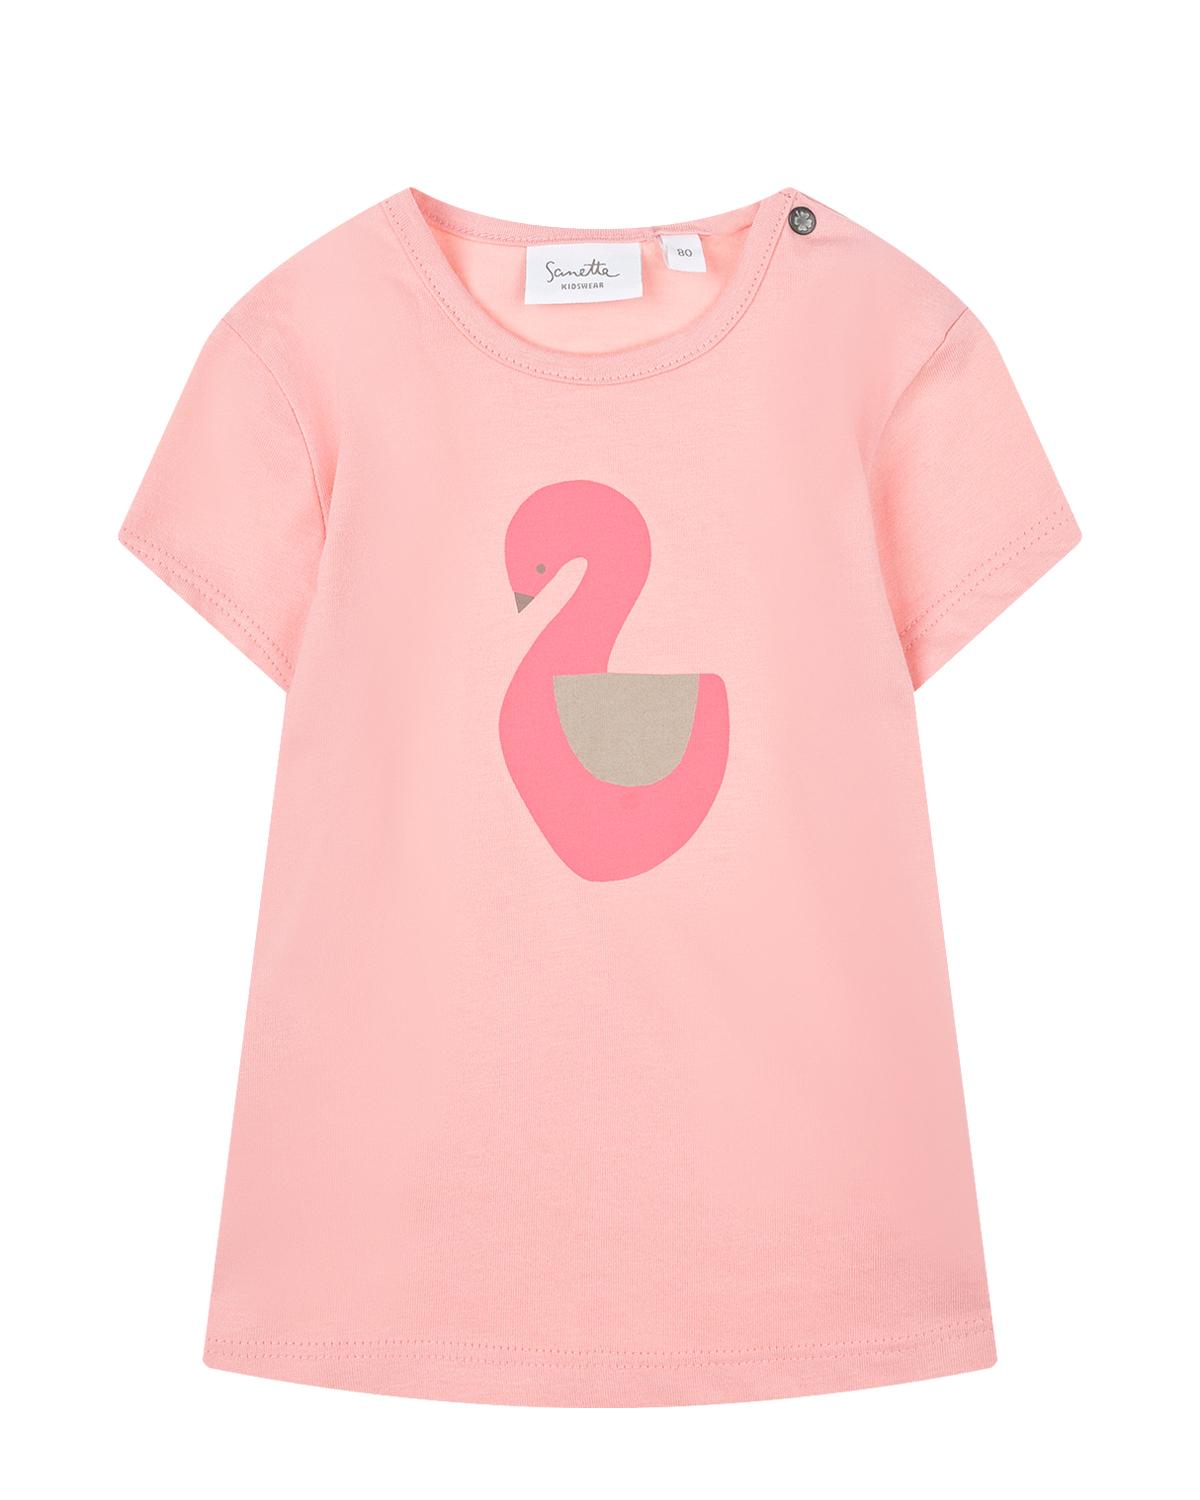 Розовая футболка с принтом "лебедь" Sanetta Kidswear